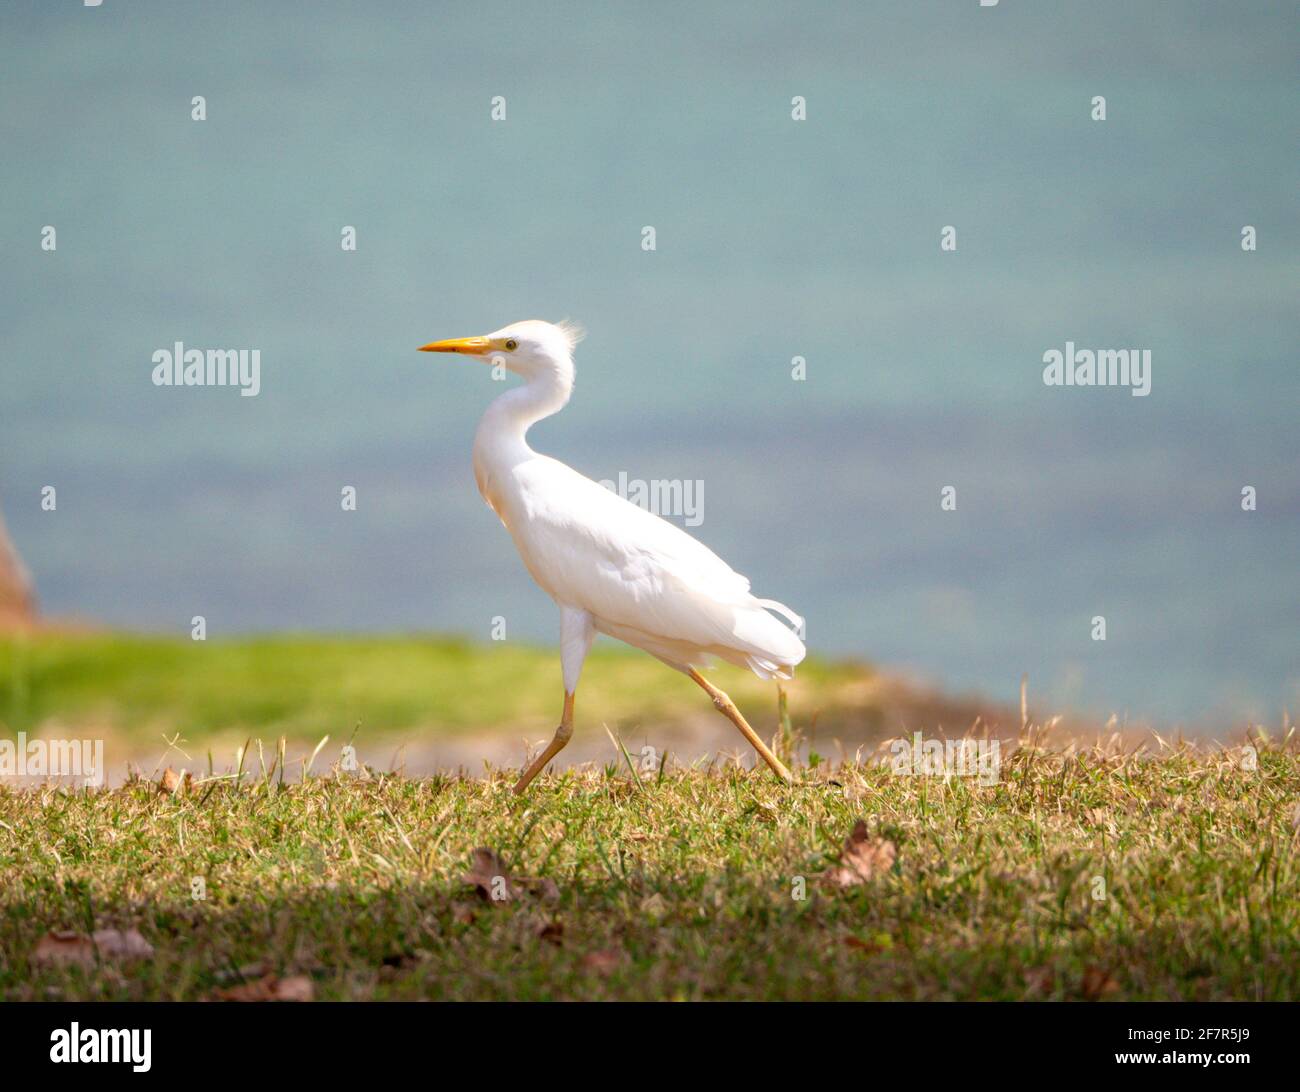 oiseau blanc avec de longues jambes en course Banque D'Images